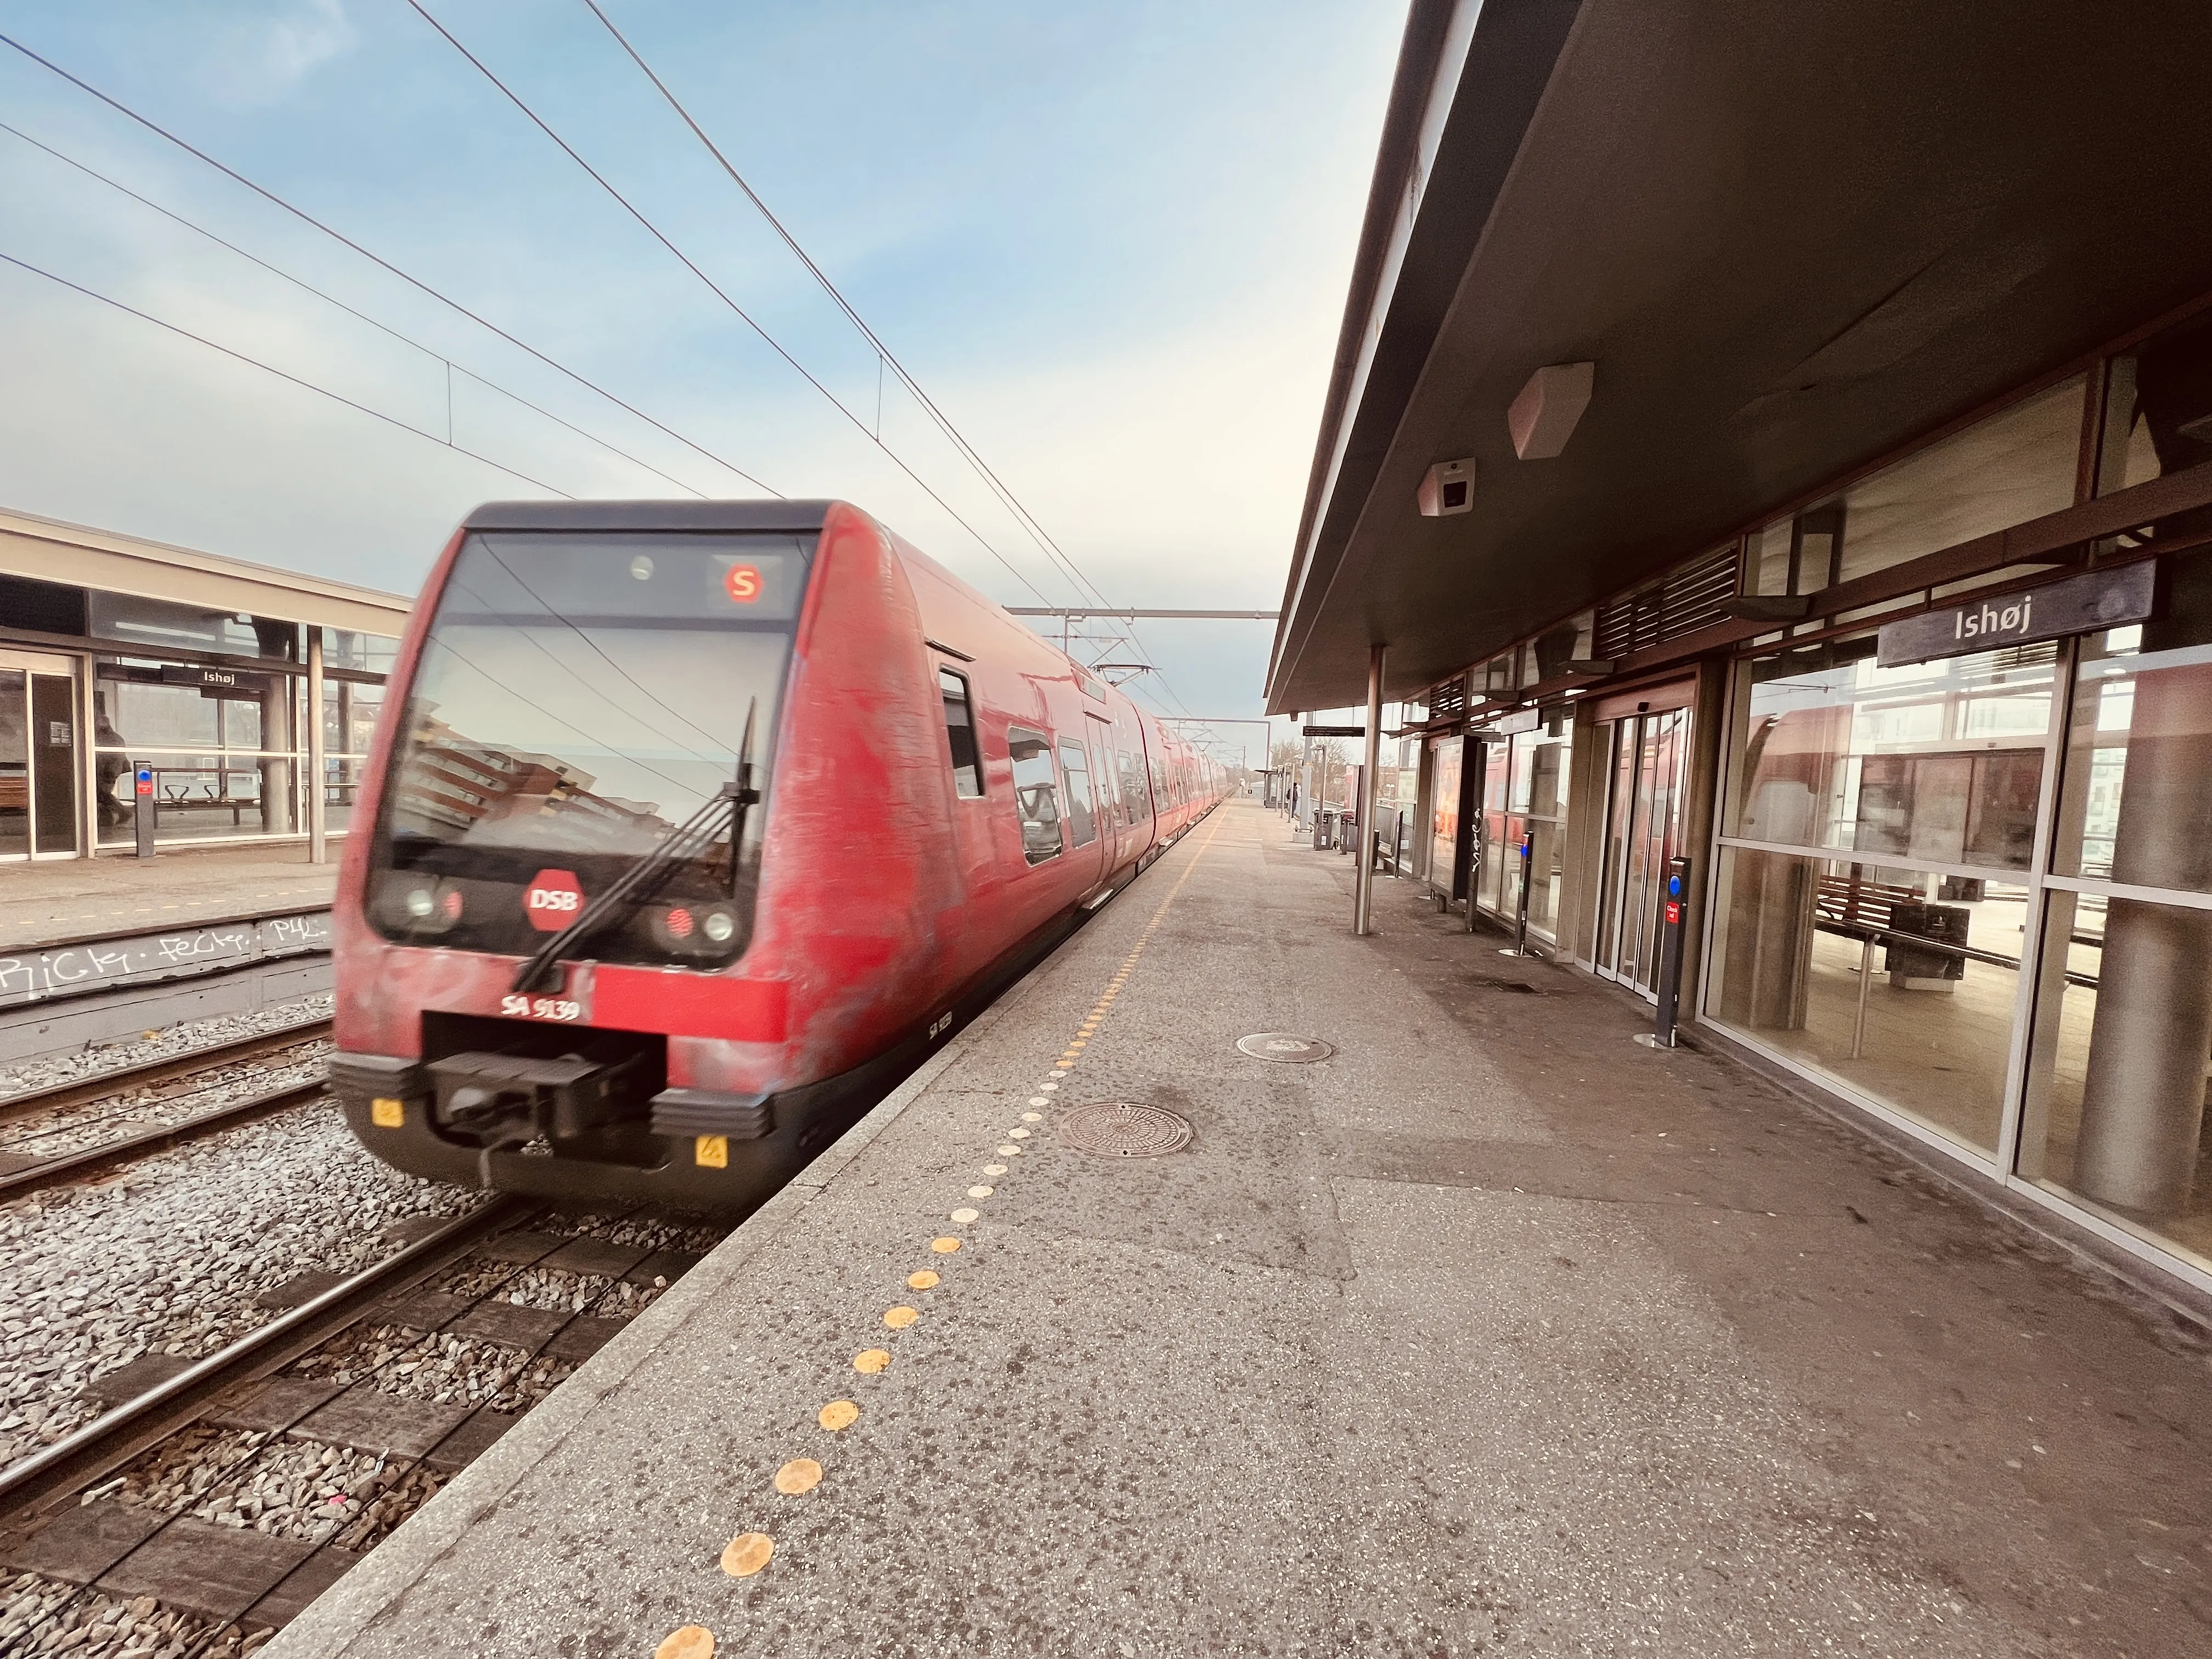 Billede af DSB SA 8139 fotograferet ud for Ishøj S-togsstation.